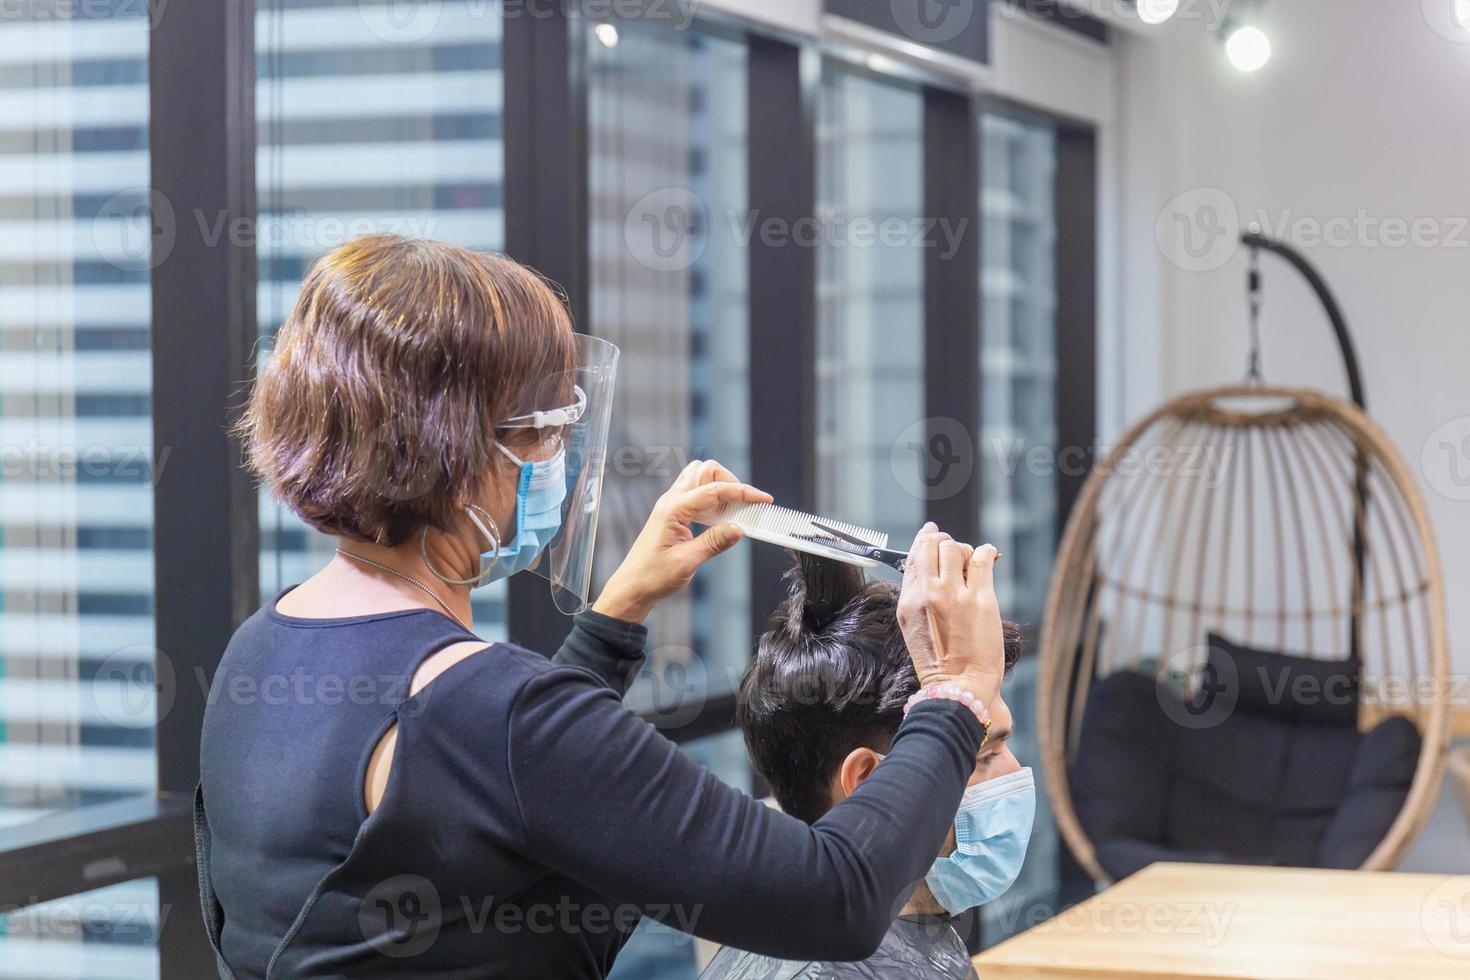 coiffeuse coupant les cheveux du client avec des ciseaux et un peigne, coiffeuse et client portant un masque de protection en raison de la pandémie de coronavirus, nouveaux concepts normaux photo